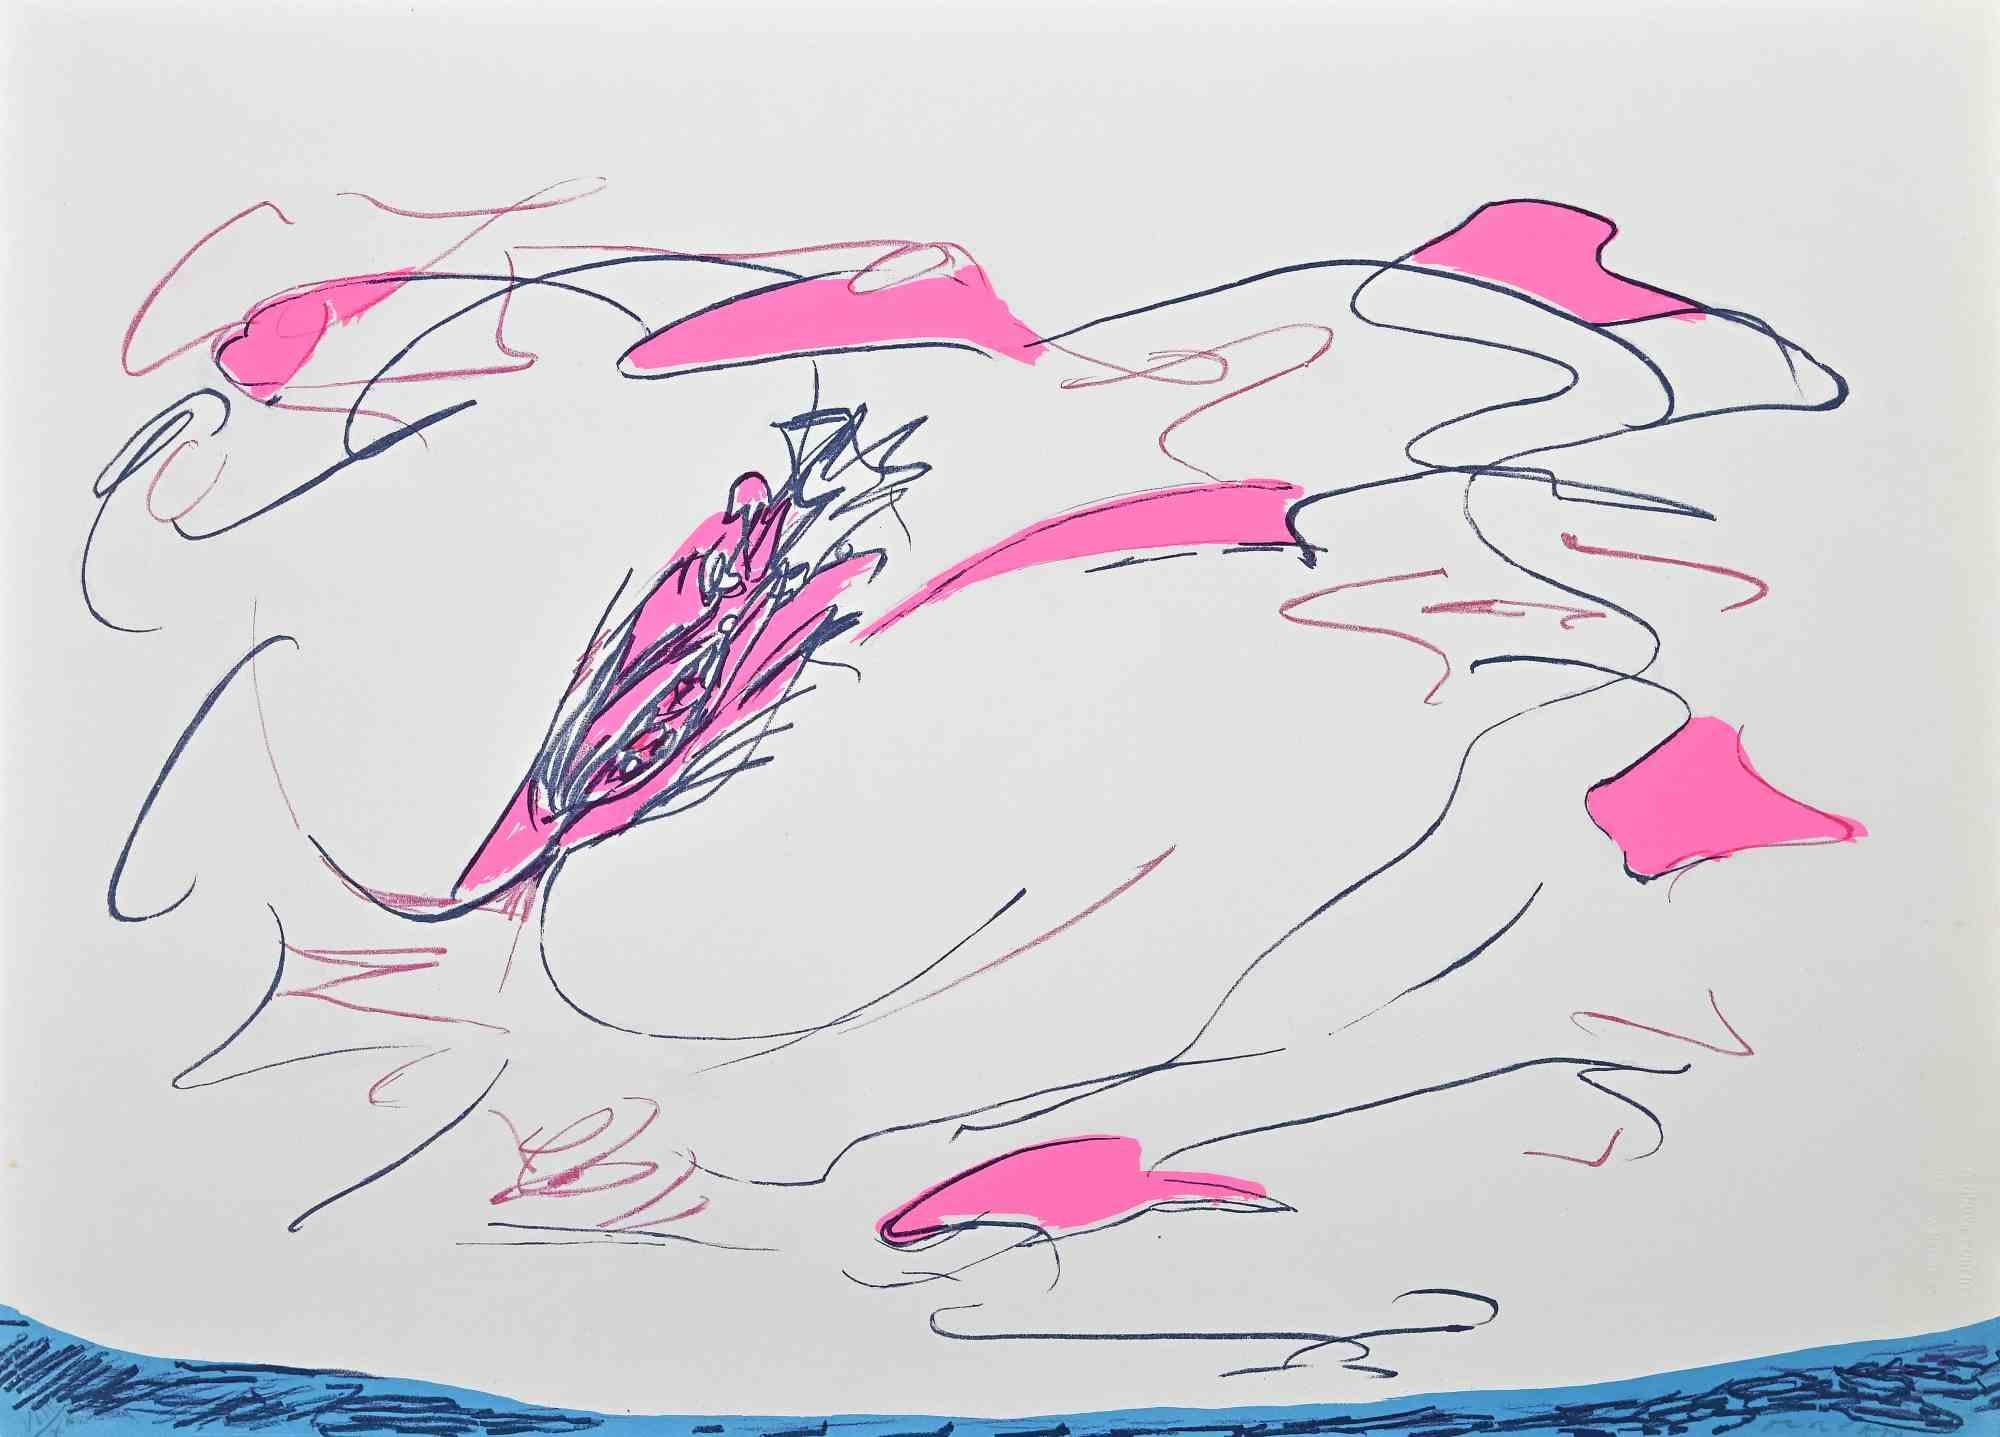 Composition abstraite est une sérigraphie colorée réalisée par l'artiste contemporain Giulio Turcato en 1973.

Signé à la main au crayon en bas à droite.

Numérotée dans la marge inférieure gauche, édition VIII/X.

Label d'authenticité de La Nuova